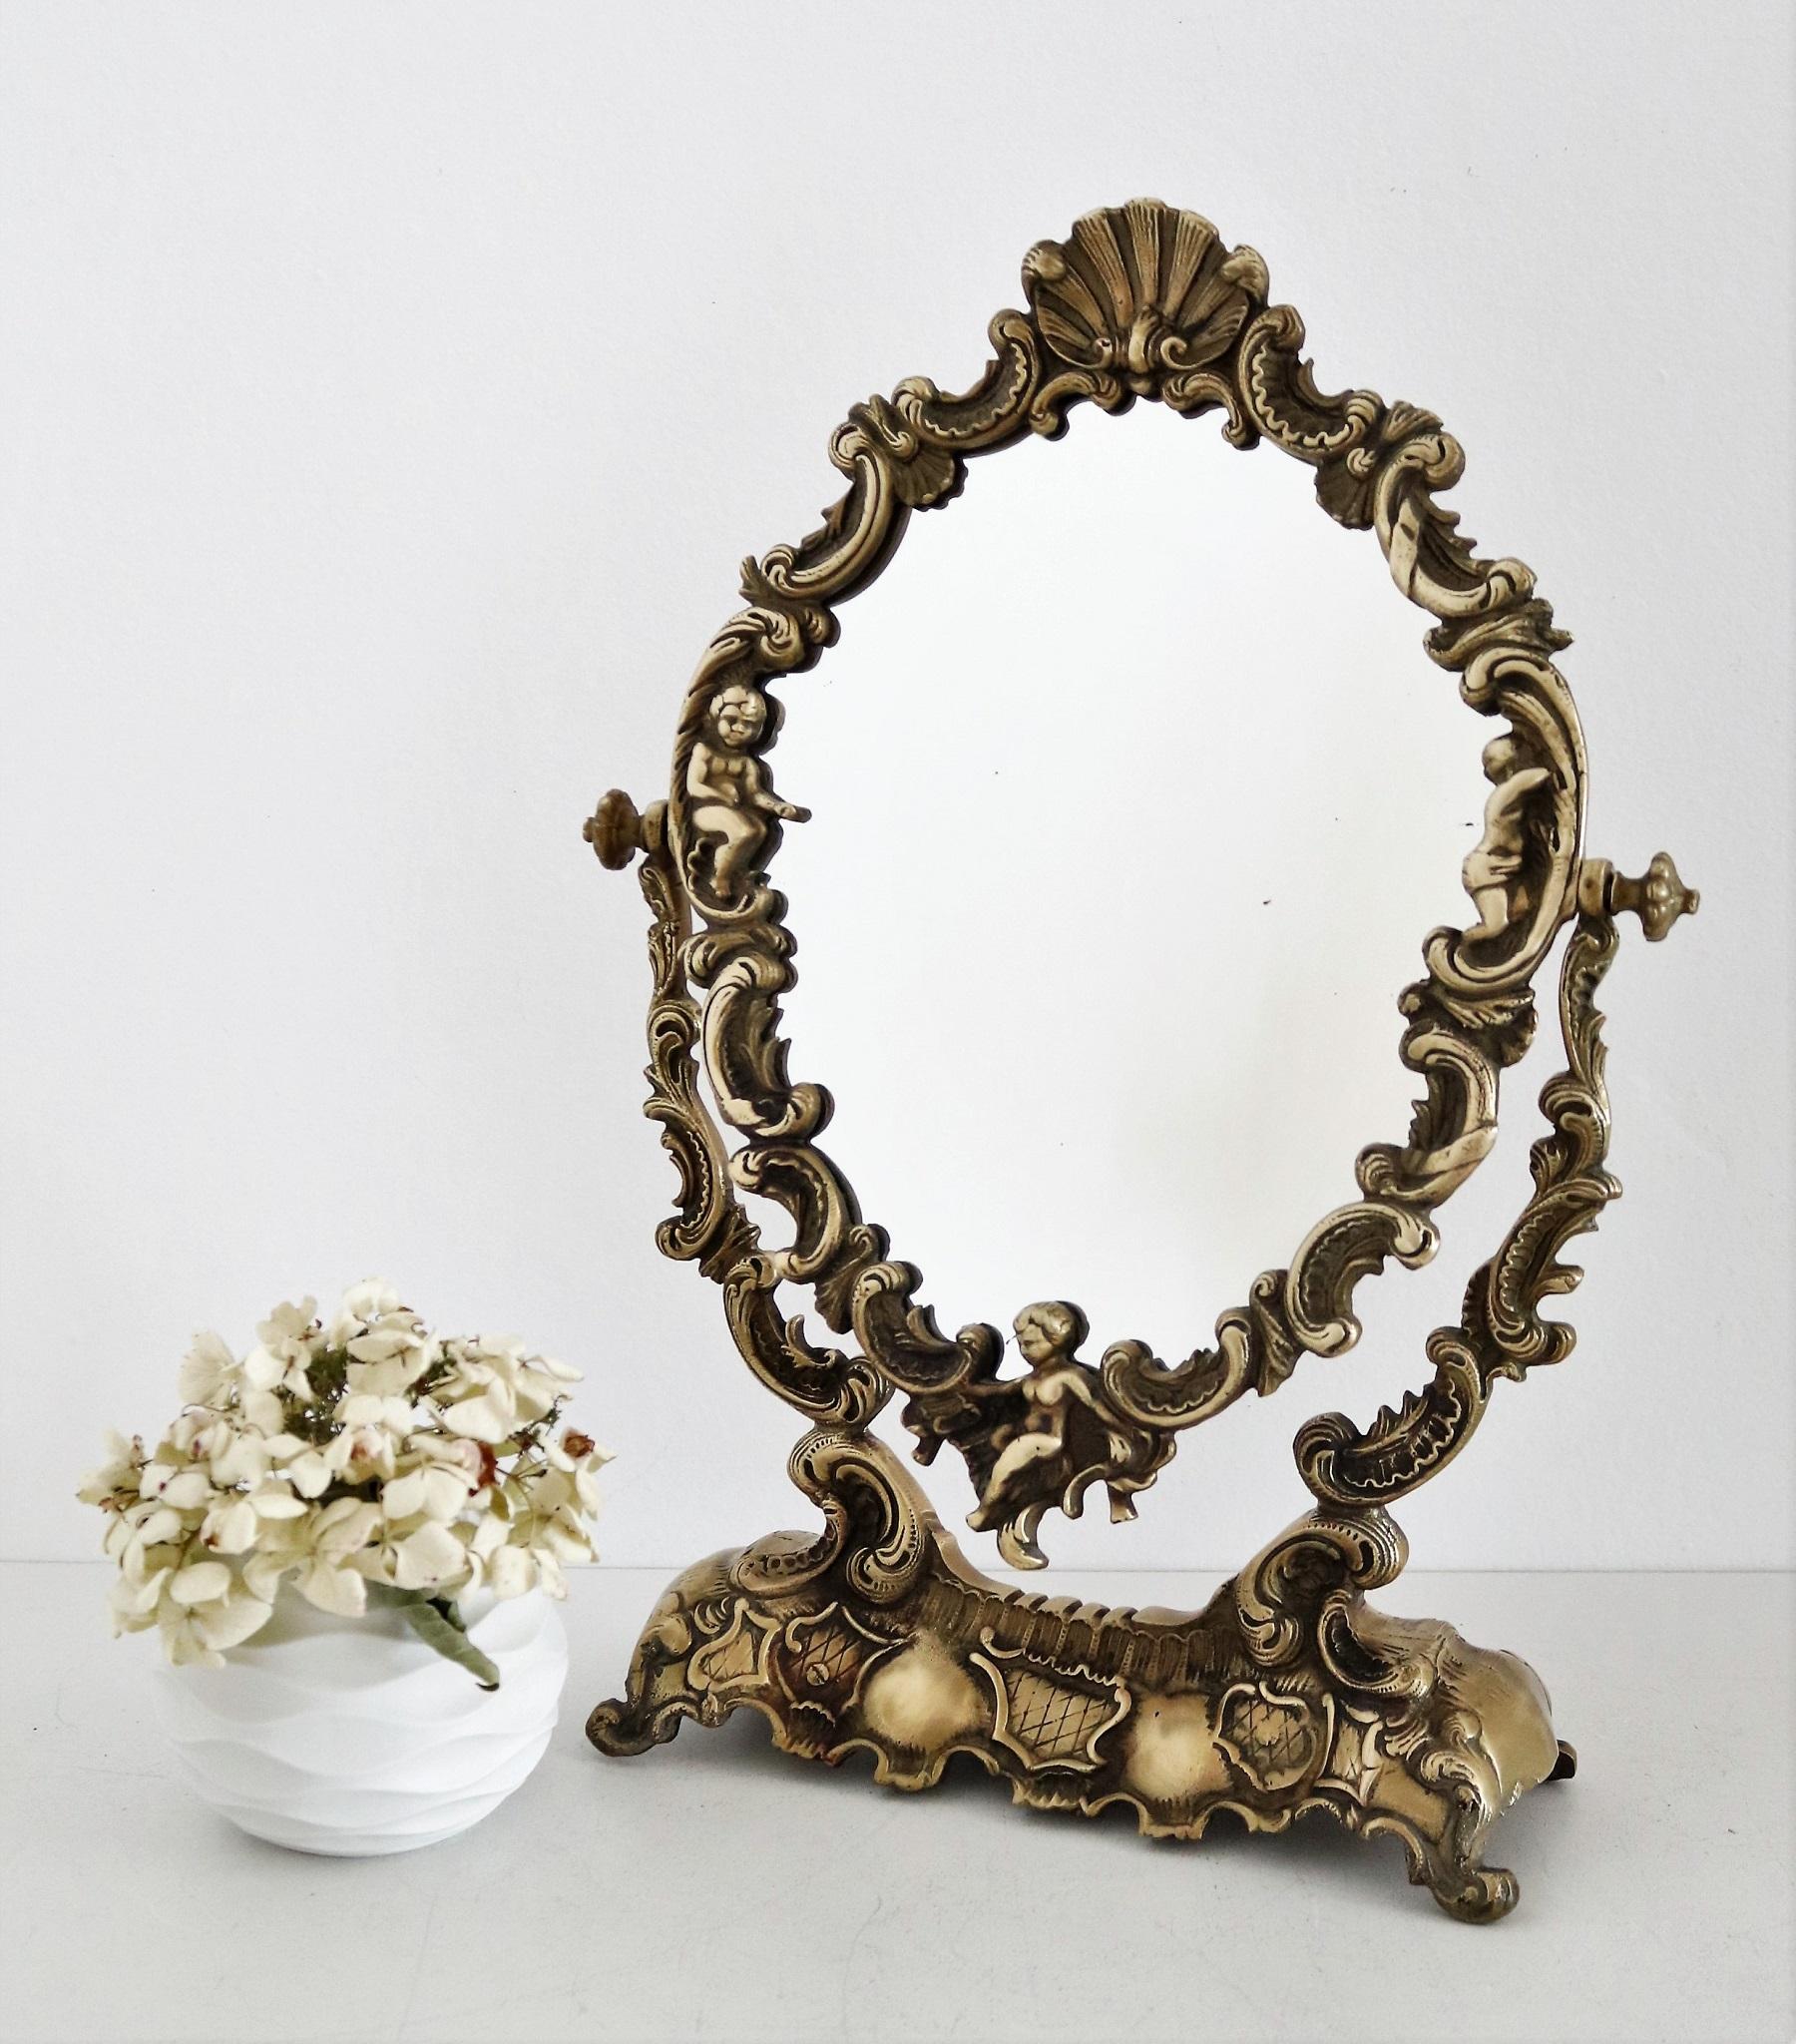 Magnifique miroir de coiffeuse en bronze lourd et plein, avec des anges (putti) et des coquillages dans le cadre.
Fabriqué en Italie au milieu du siècle dernier.
Le verre du miroir encadré est fixé à la base par deux vis, et peut être tourné dans